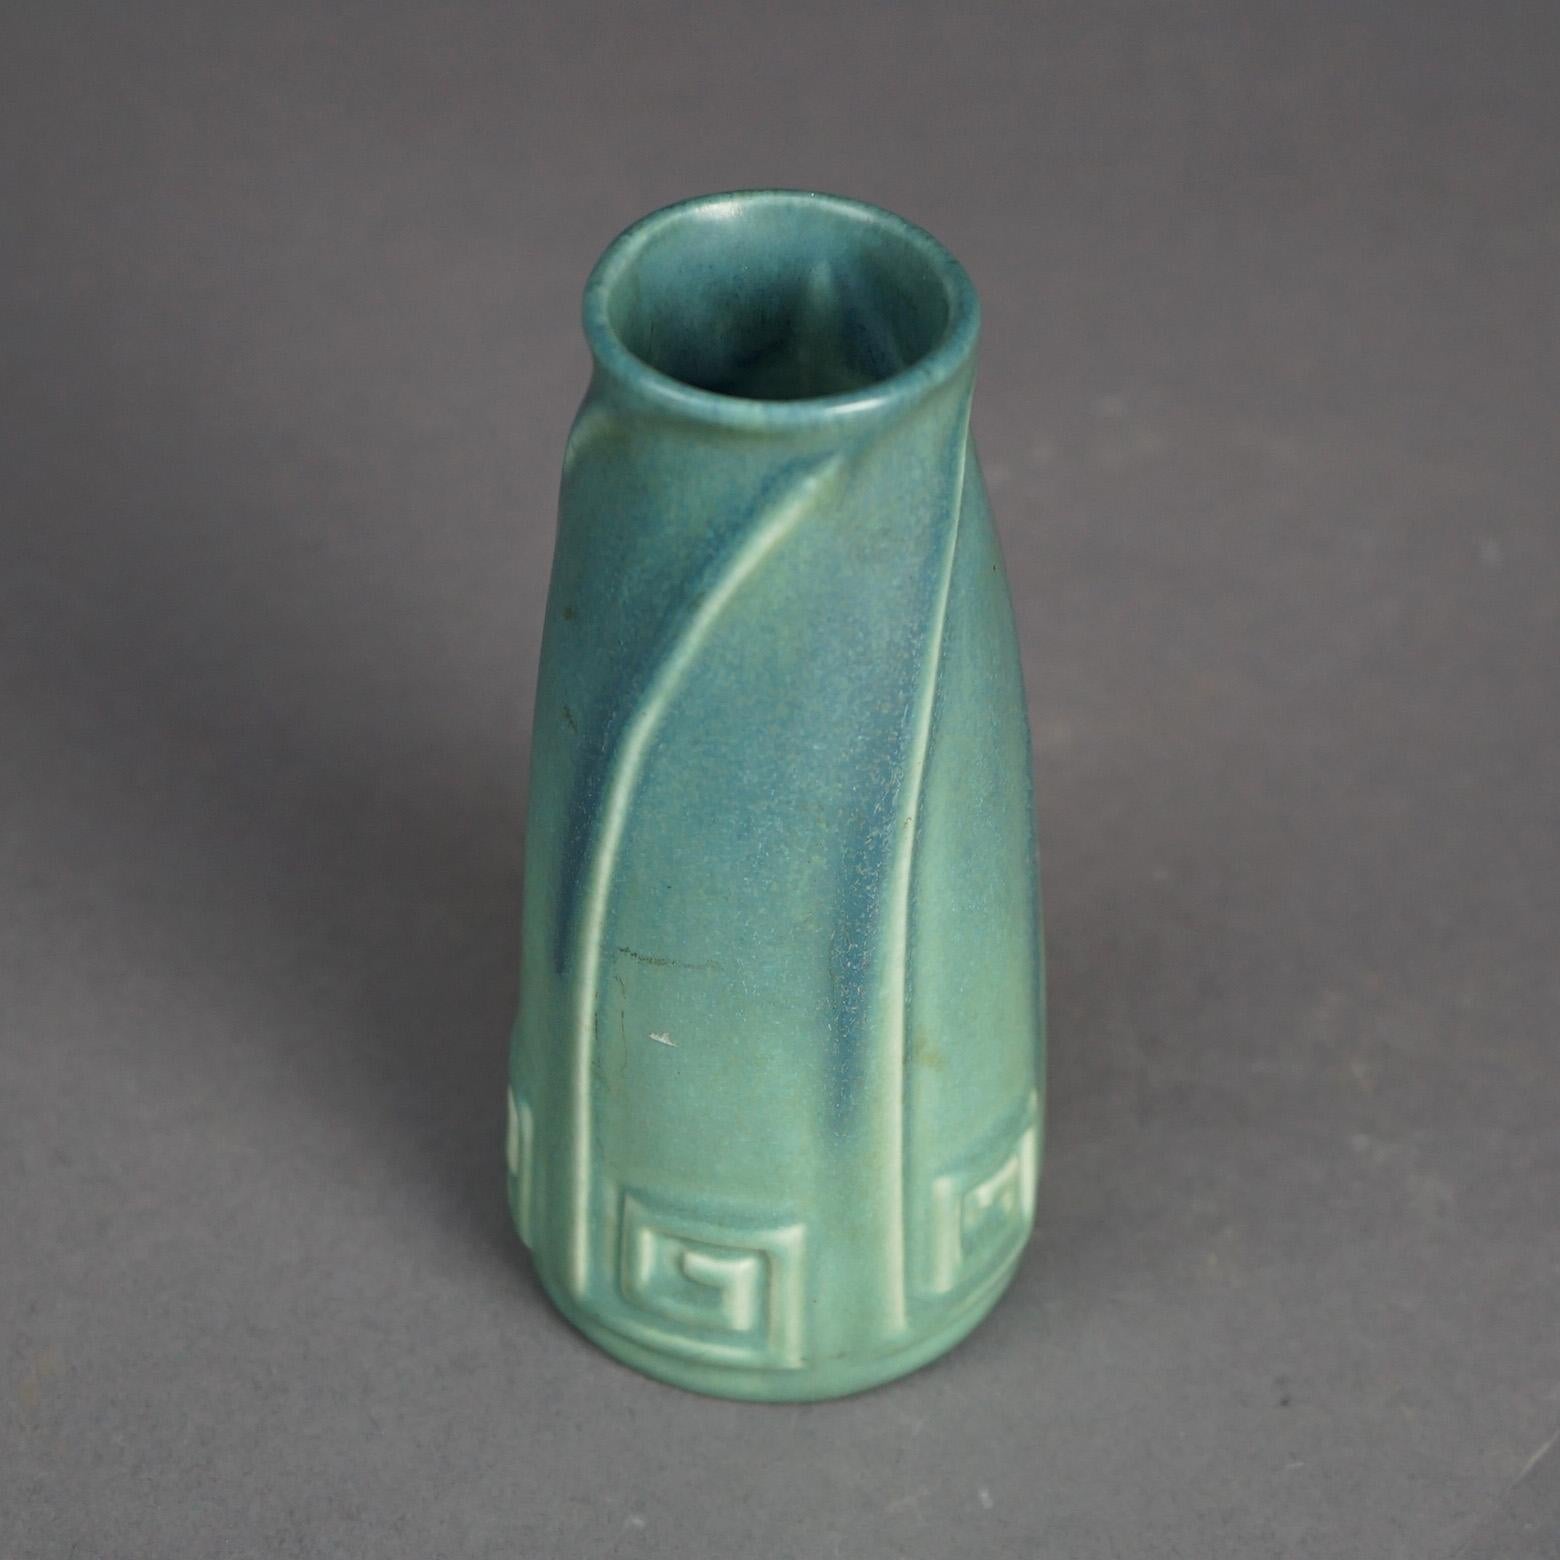 Eine antike Arts and Crafts Vase von Rookwood bietet eine matt glasierte Keramikkonstruktion mit stilisiertem griechischem Schlüssel und Wirbelelementen, signiert auf dem Sockel wie fotografiert, um 1923

Maße: 6''H x 2,75''B x 2,75''D